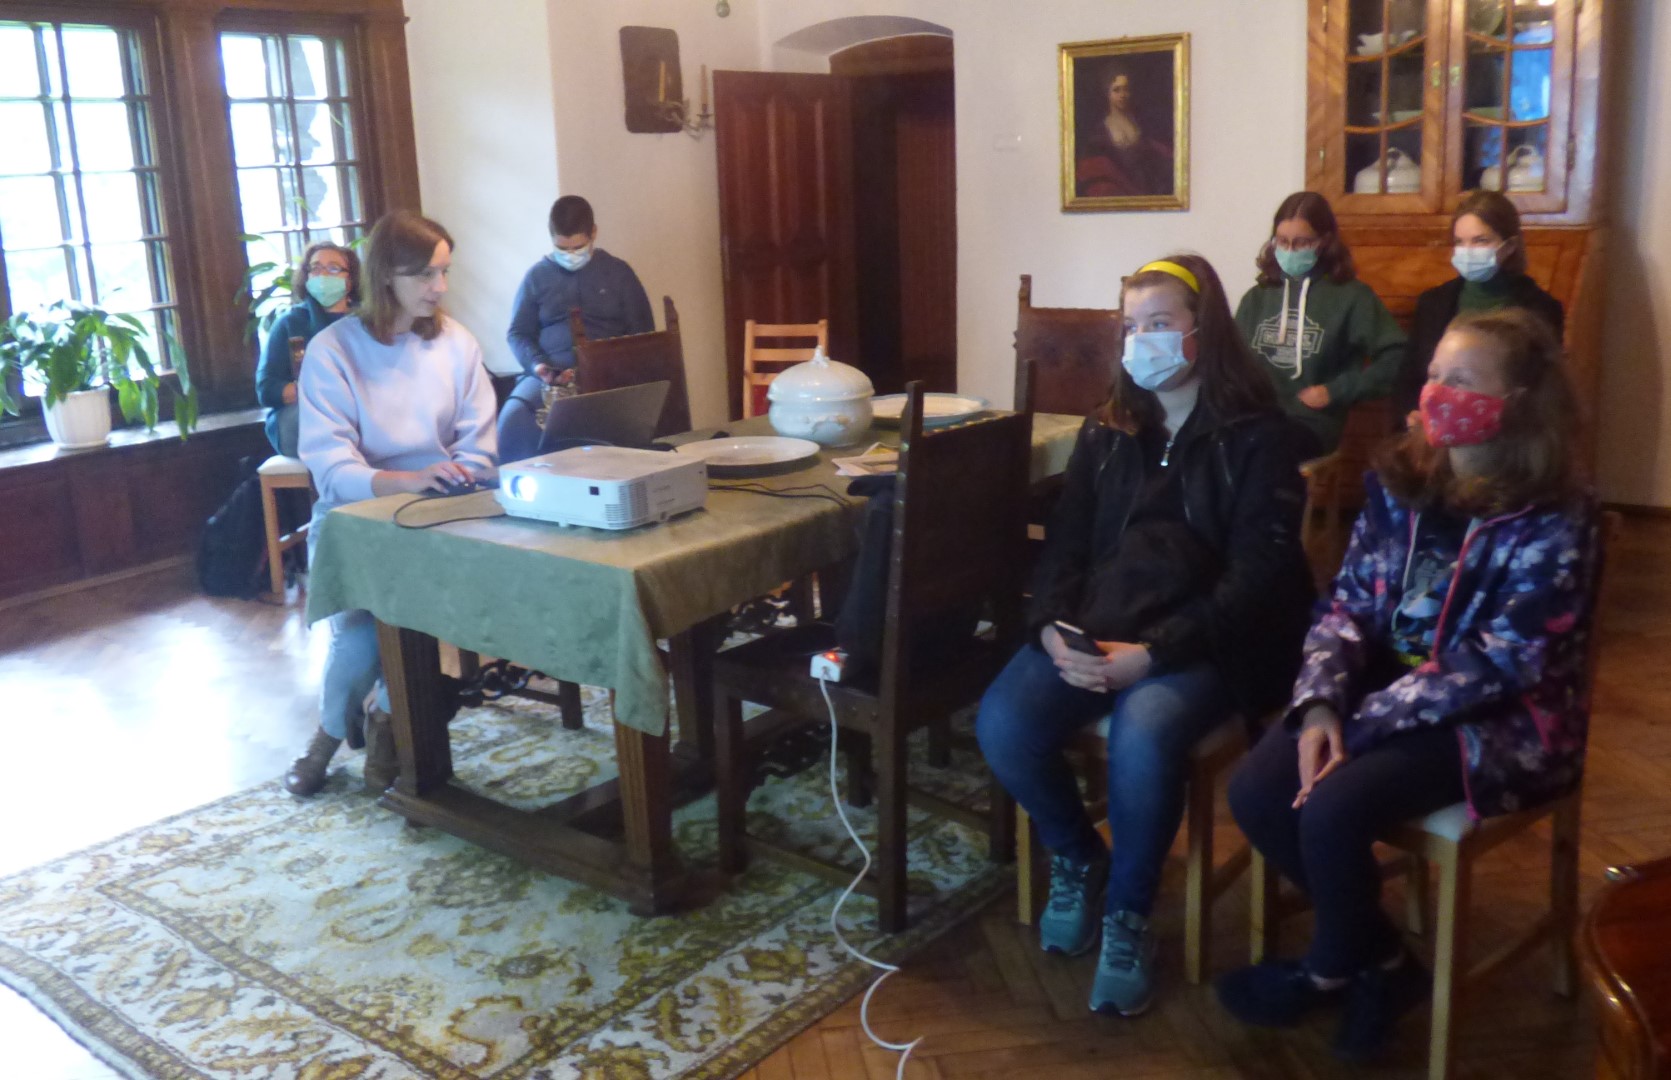 Wokół stołu siedzi pięciu uczestników projektu wraz z instruktorem słuchając historii mieszkańców Dworu w Stryszowie, którą opowiada im pani kierownik tegoż dworu.